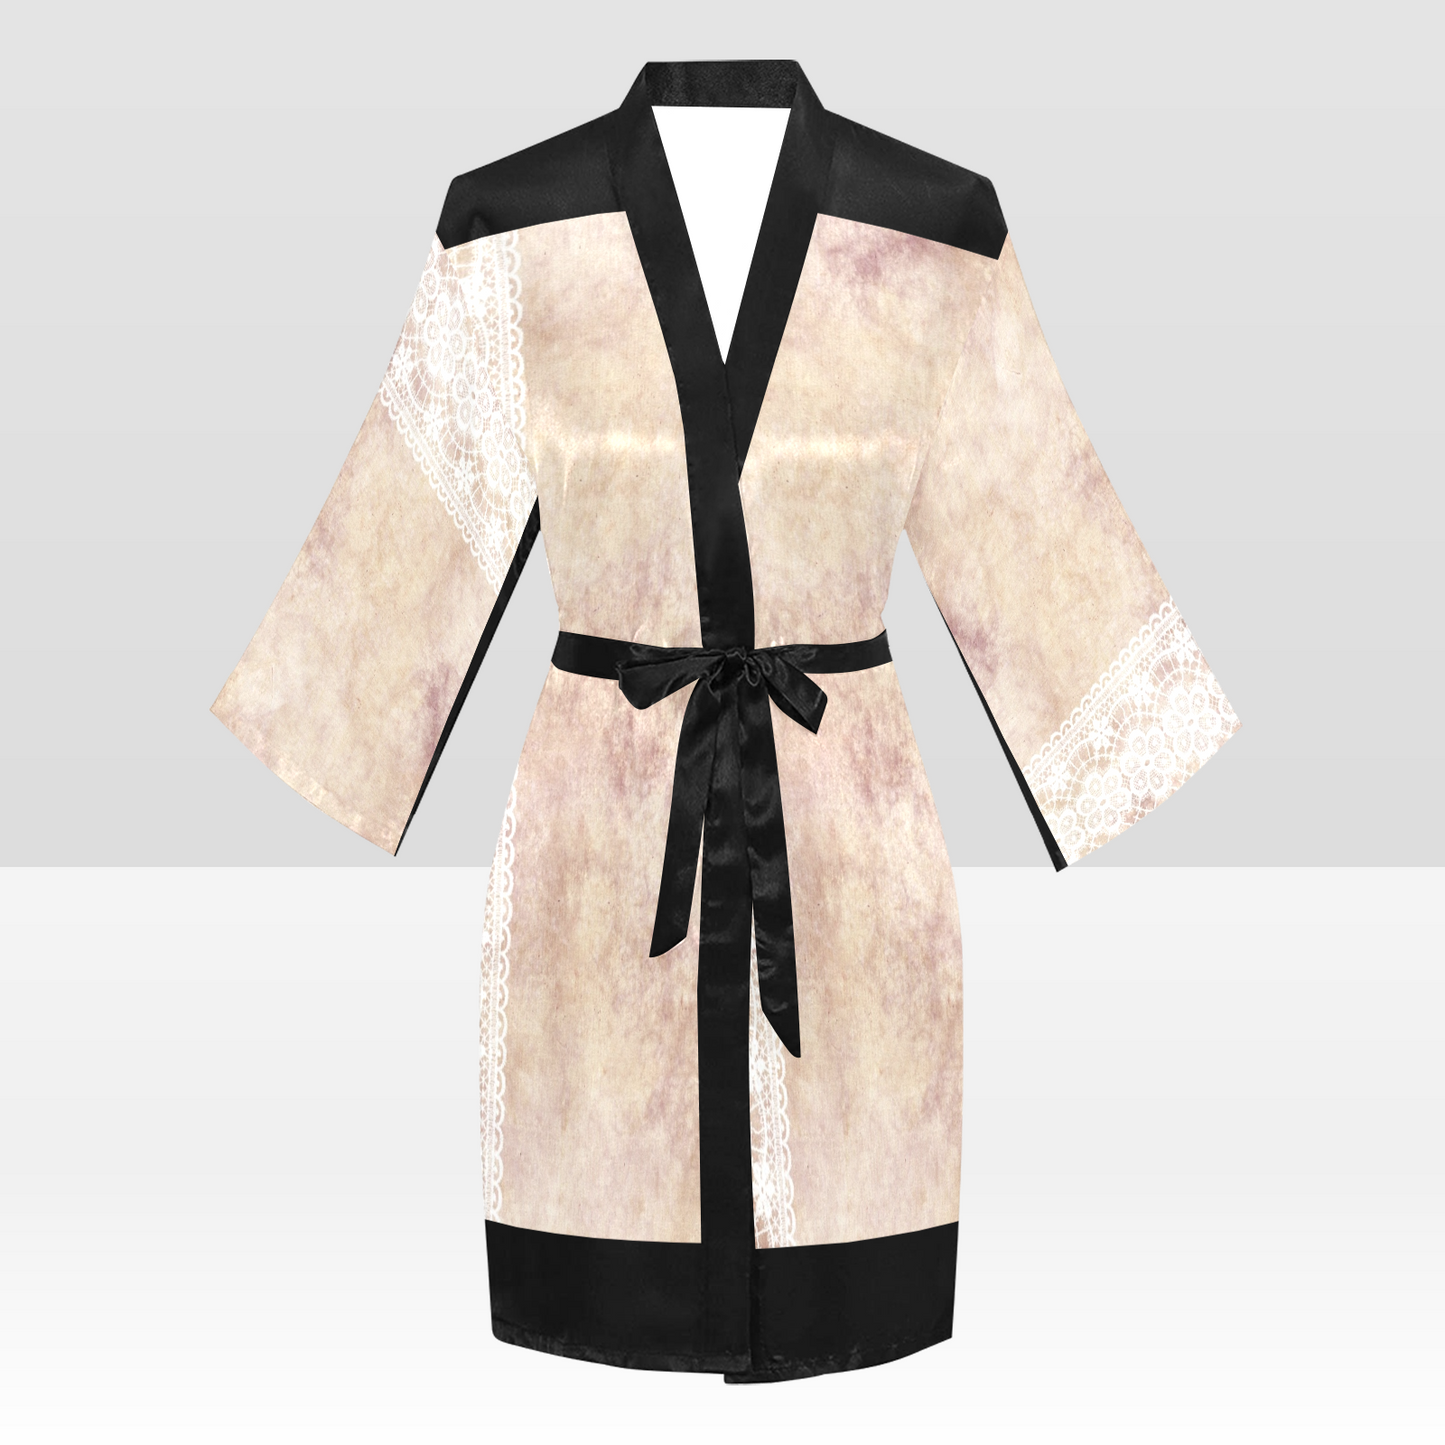 Victorian Lace Kimono Robe, Black or White Trim, Sizes XS to 2XL, Design 35